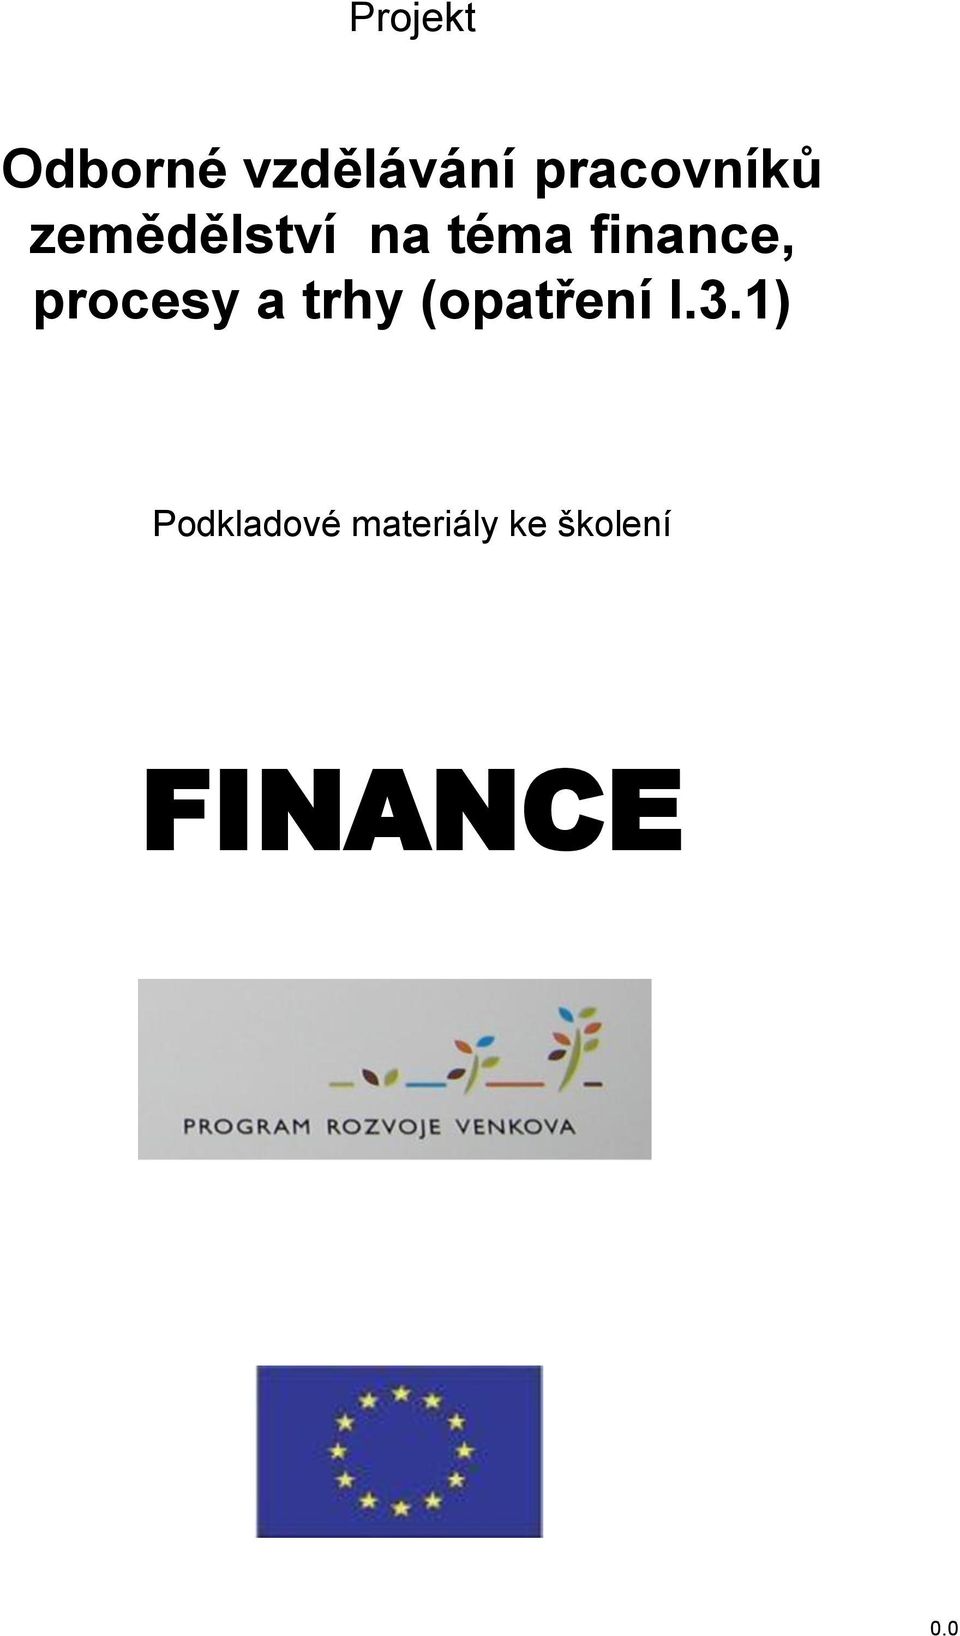 finance, procesy a trhy (opatření I.